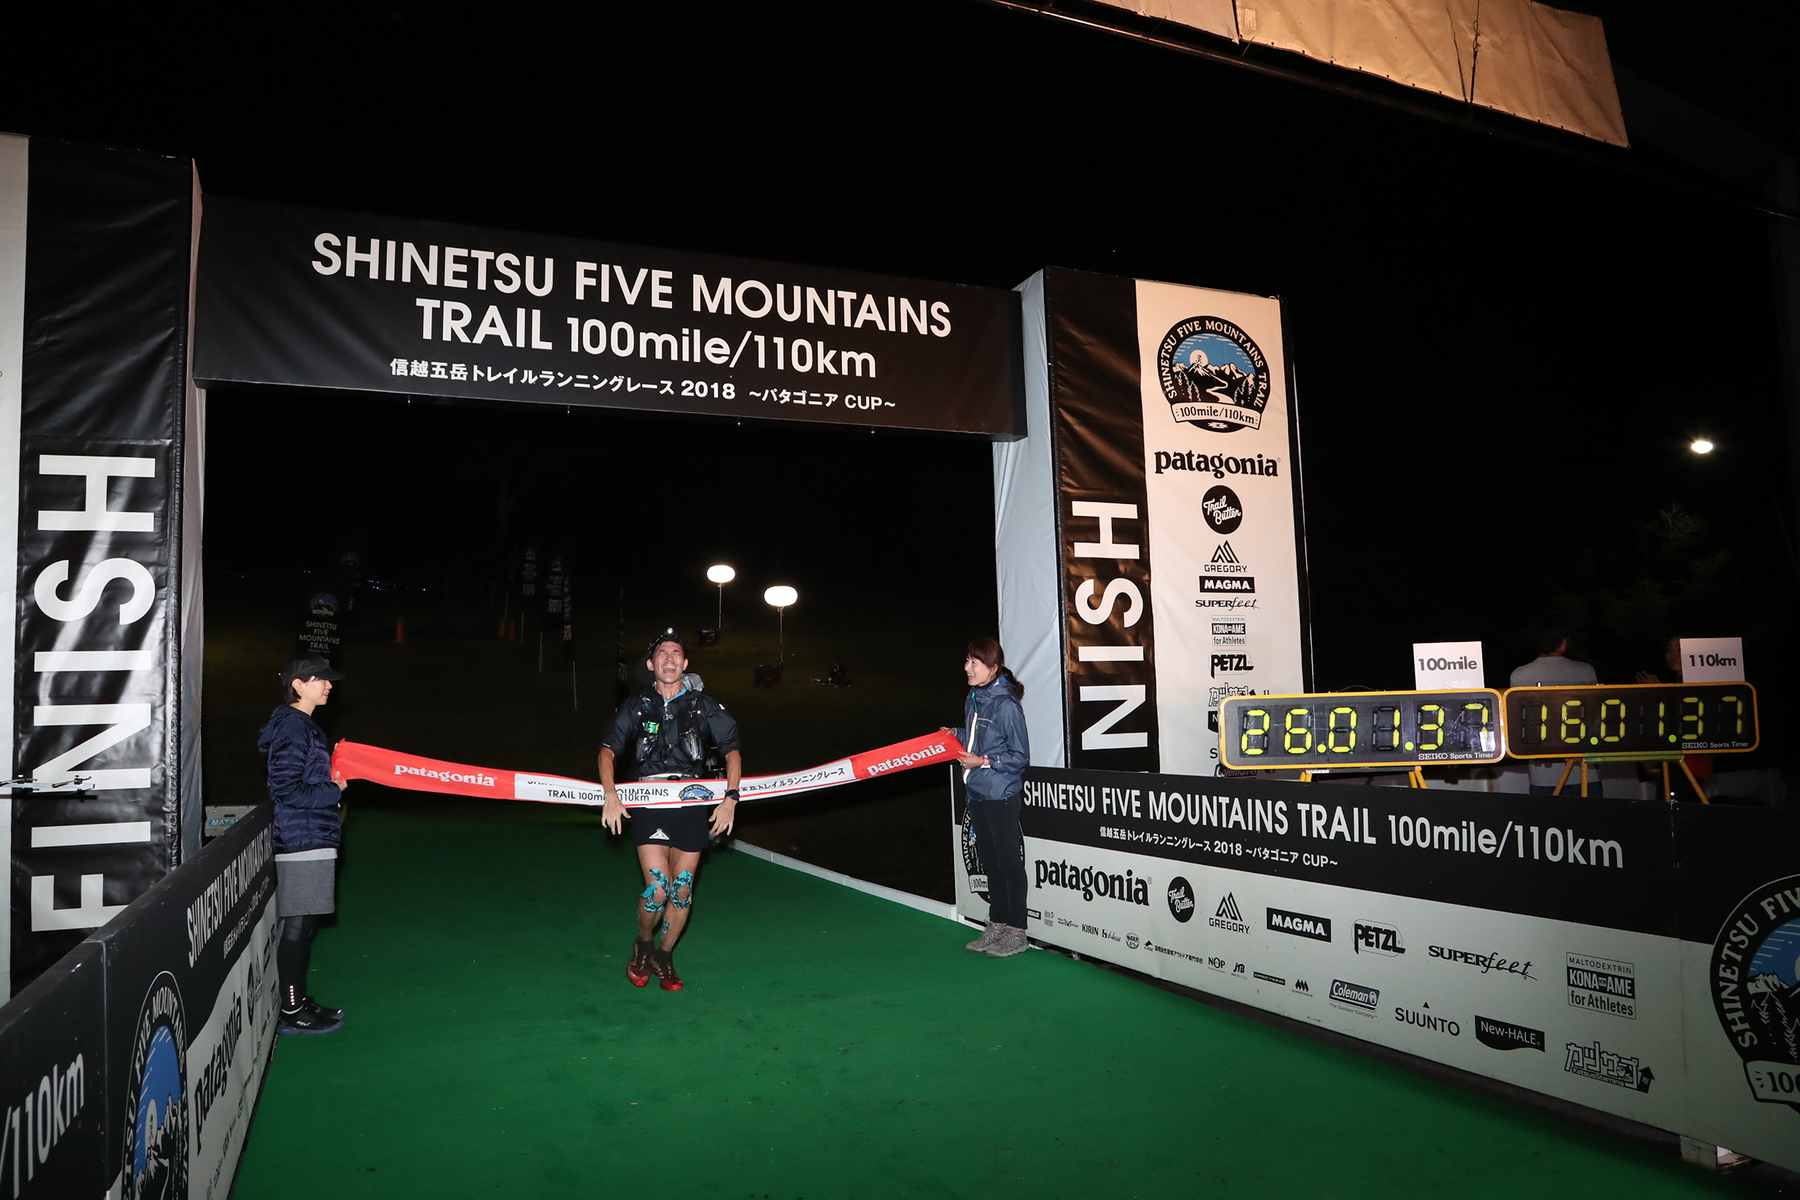 【レースレポート】信越五岳トレイルランニングレース2018 110km – 2